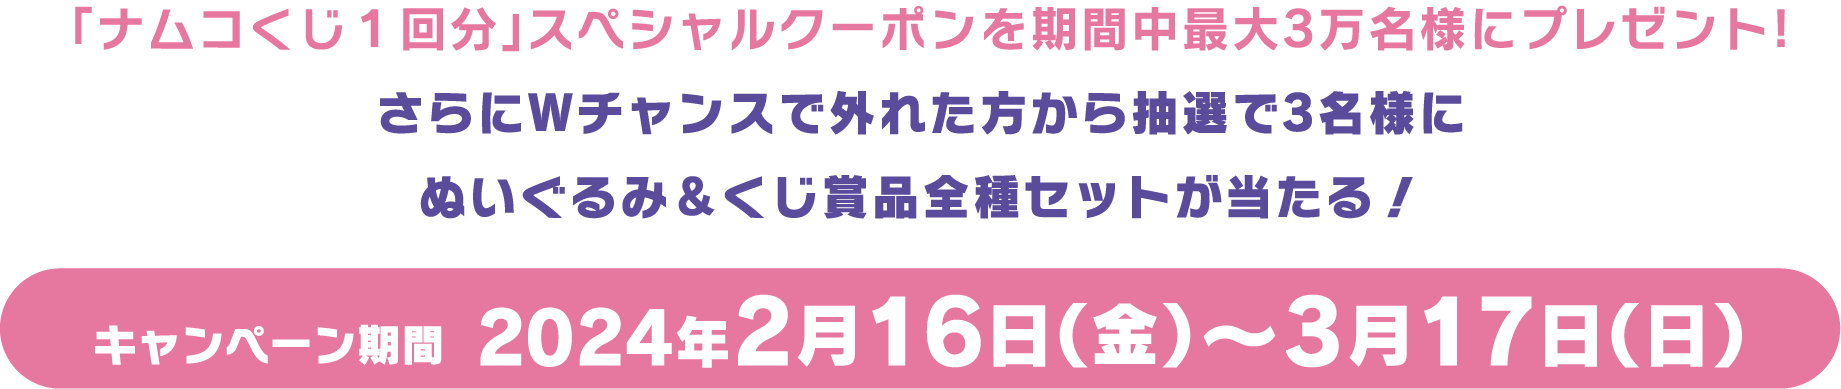 キャンペーン期間  2024年2月16日(金)～3月17日(日)!